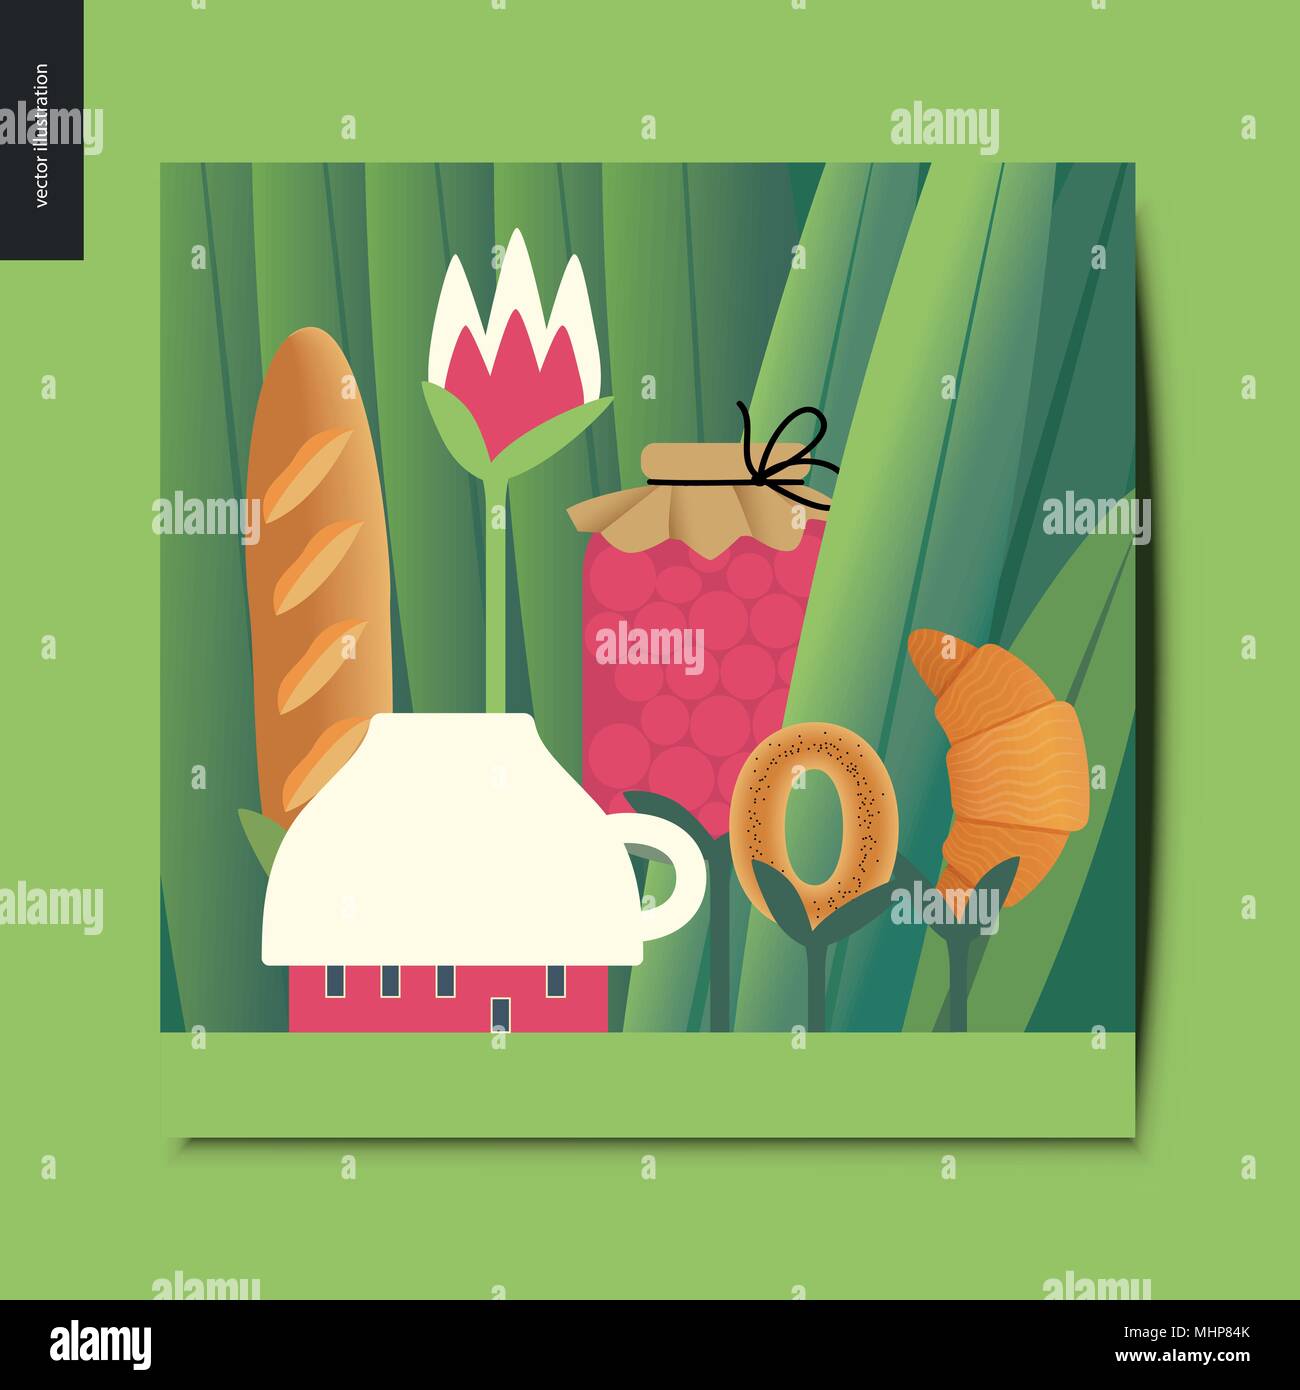 Einfache Dinge - Konzept Abbildung eines winzigen Schale Haus und T-Stück Mahlzeit auf den Stielen wachsenden zwischen riesigen Gras-Leitungen - Glas Marmelade, Brot Brot, Croissant Stock Vektor